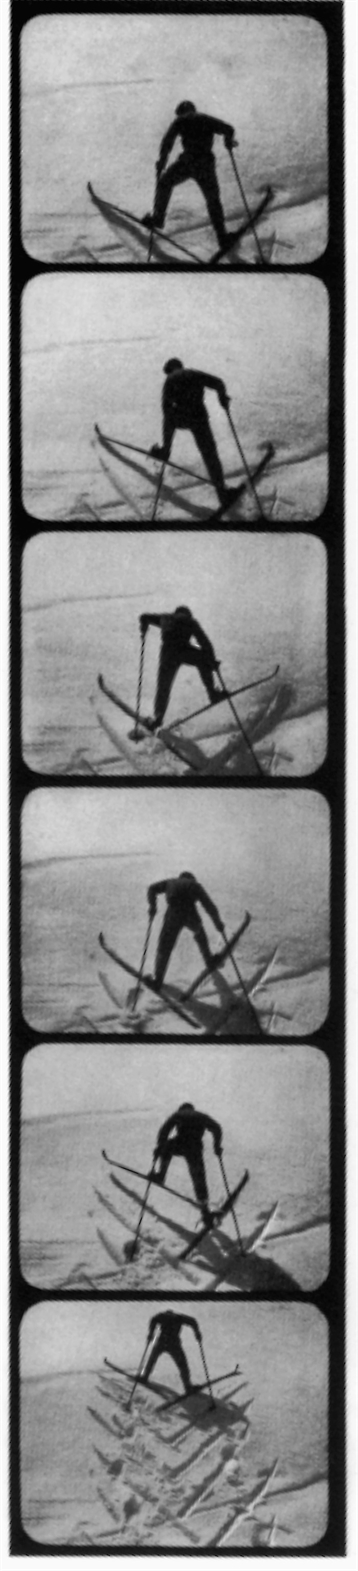 Das Wunder des Schneeschuhs (1922)